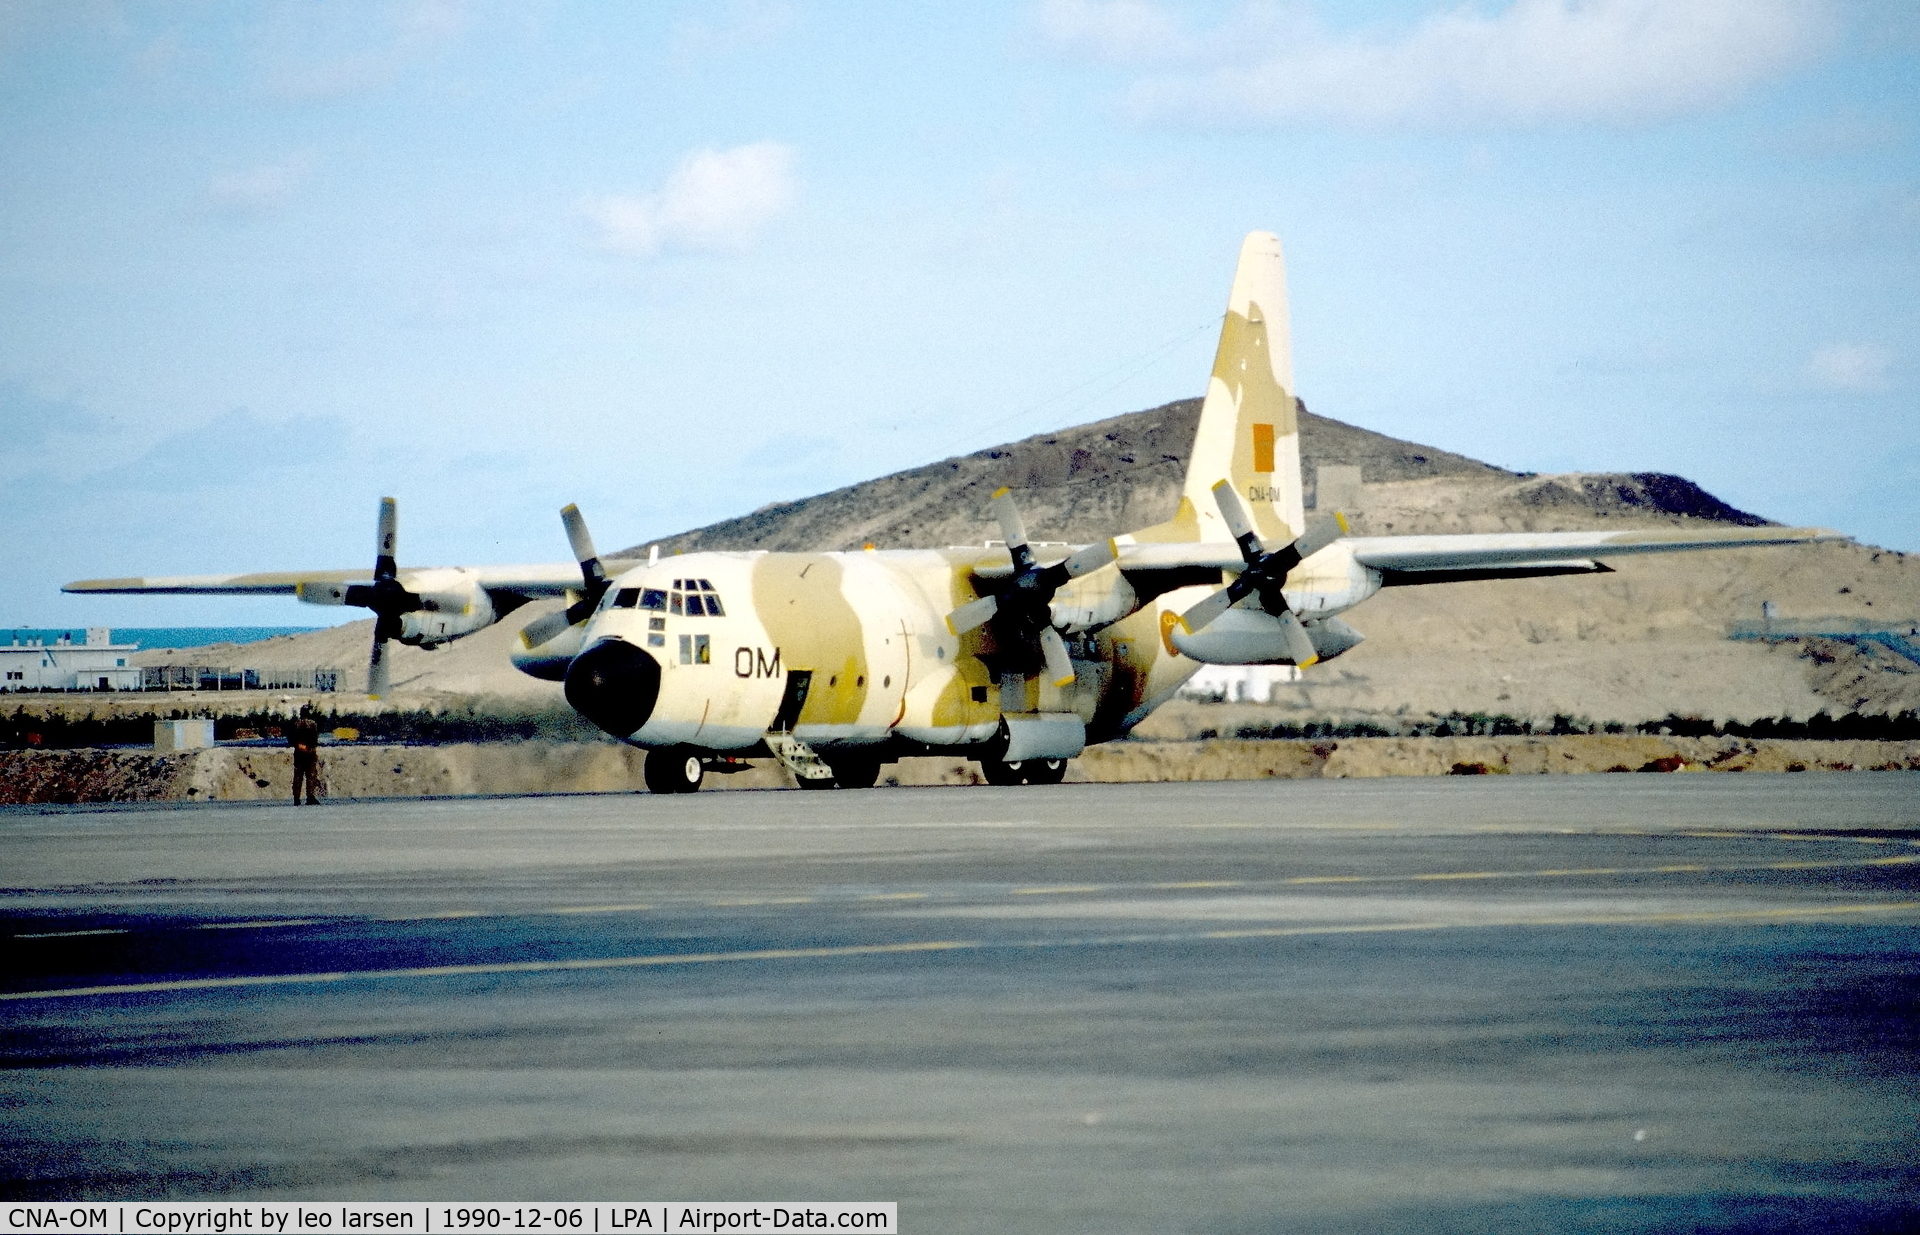 CNA-OM, 1980 Lockheed C-130H Hercules C/N 4875, Las Palmas 6.12.1990